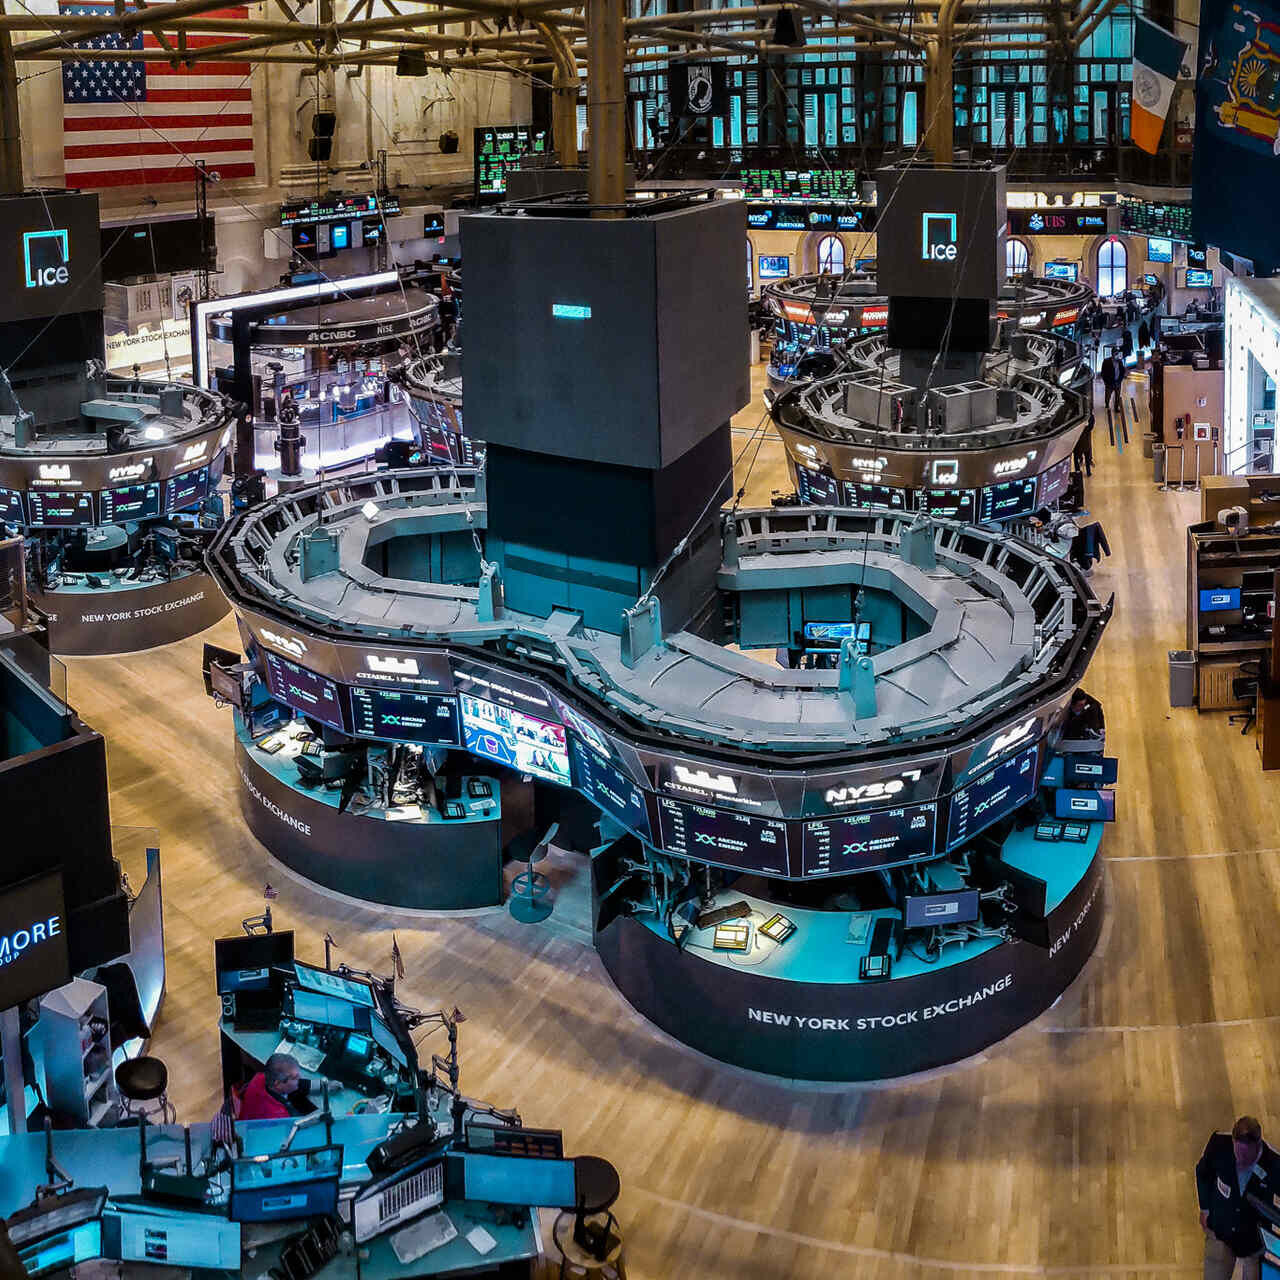 ETF: parkiet giełdowy nowojorskiej giełdy (New York Stock Exchange lub NYSE w skrócie), wzorowany na słynnej Wall Street i założony już w 1817 roku